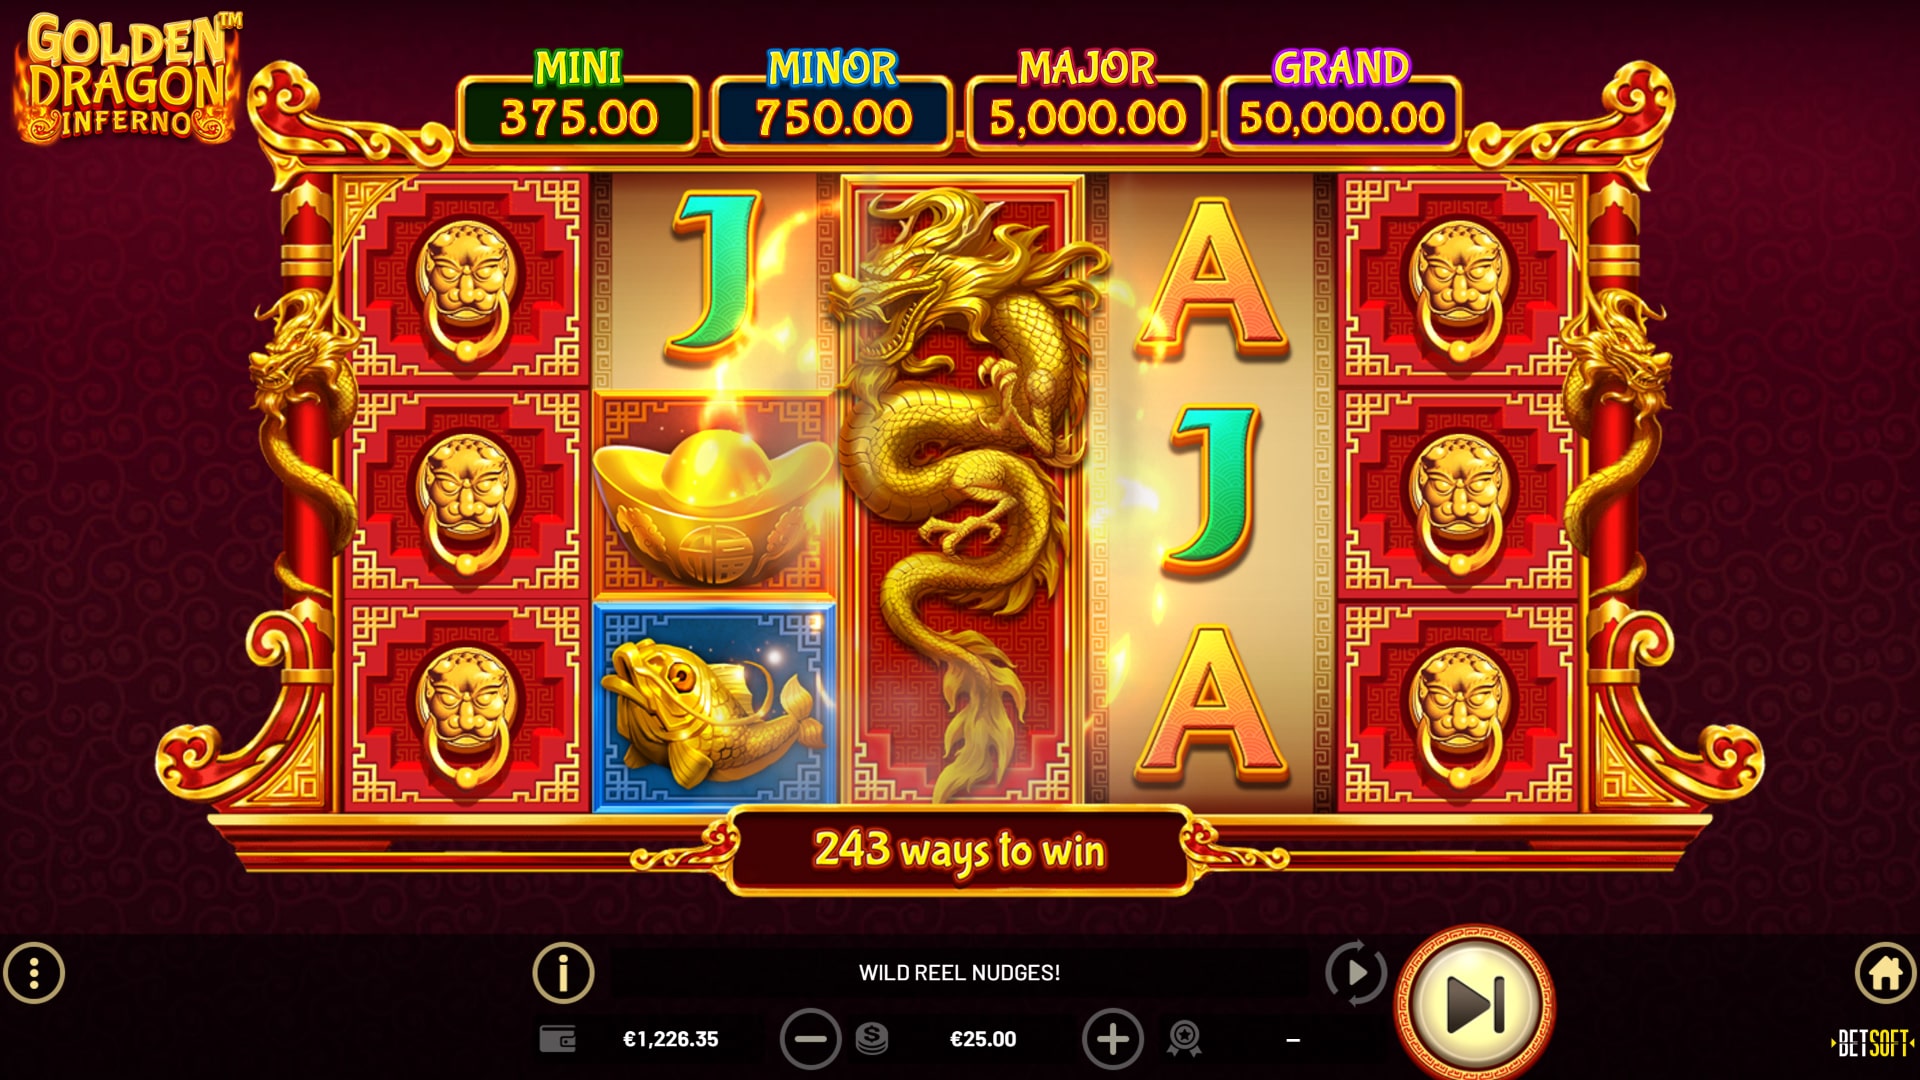 Видео-слоты «Golden Dragon Inferno» в игровом клубе казино SSL